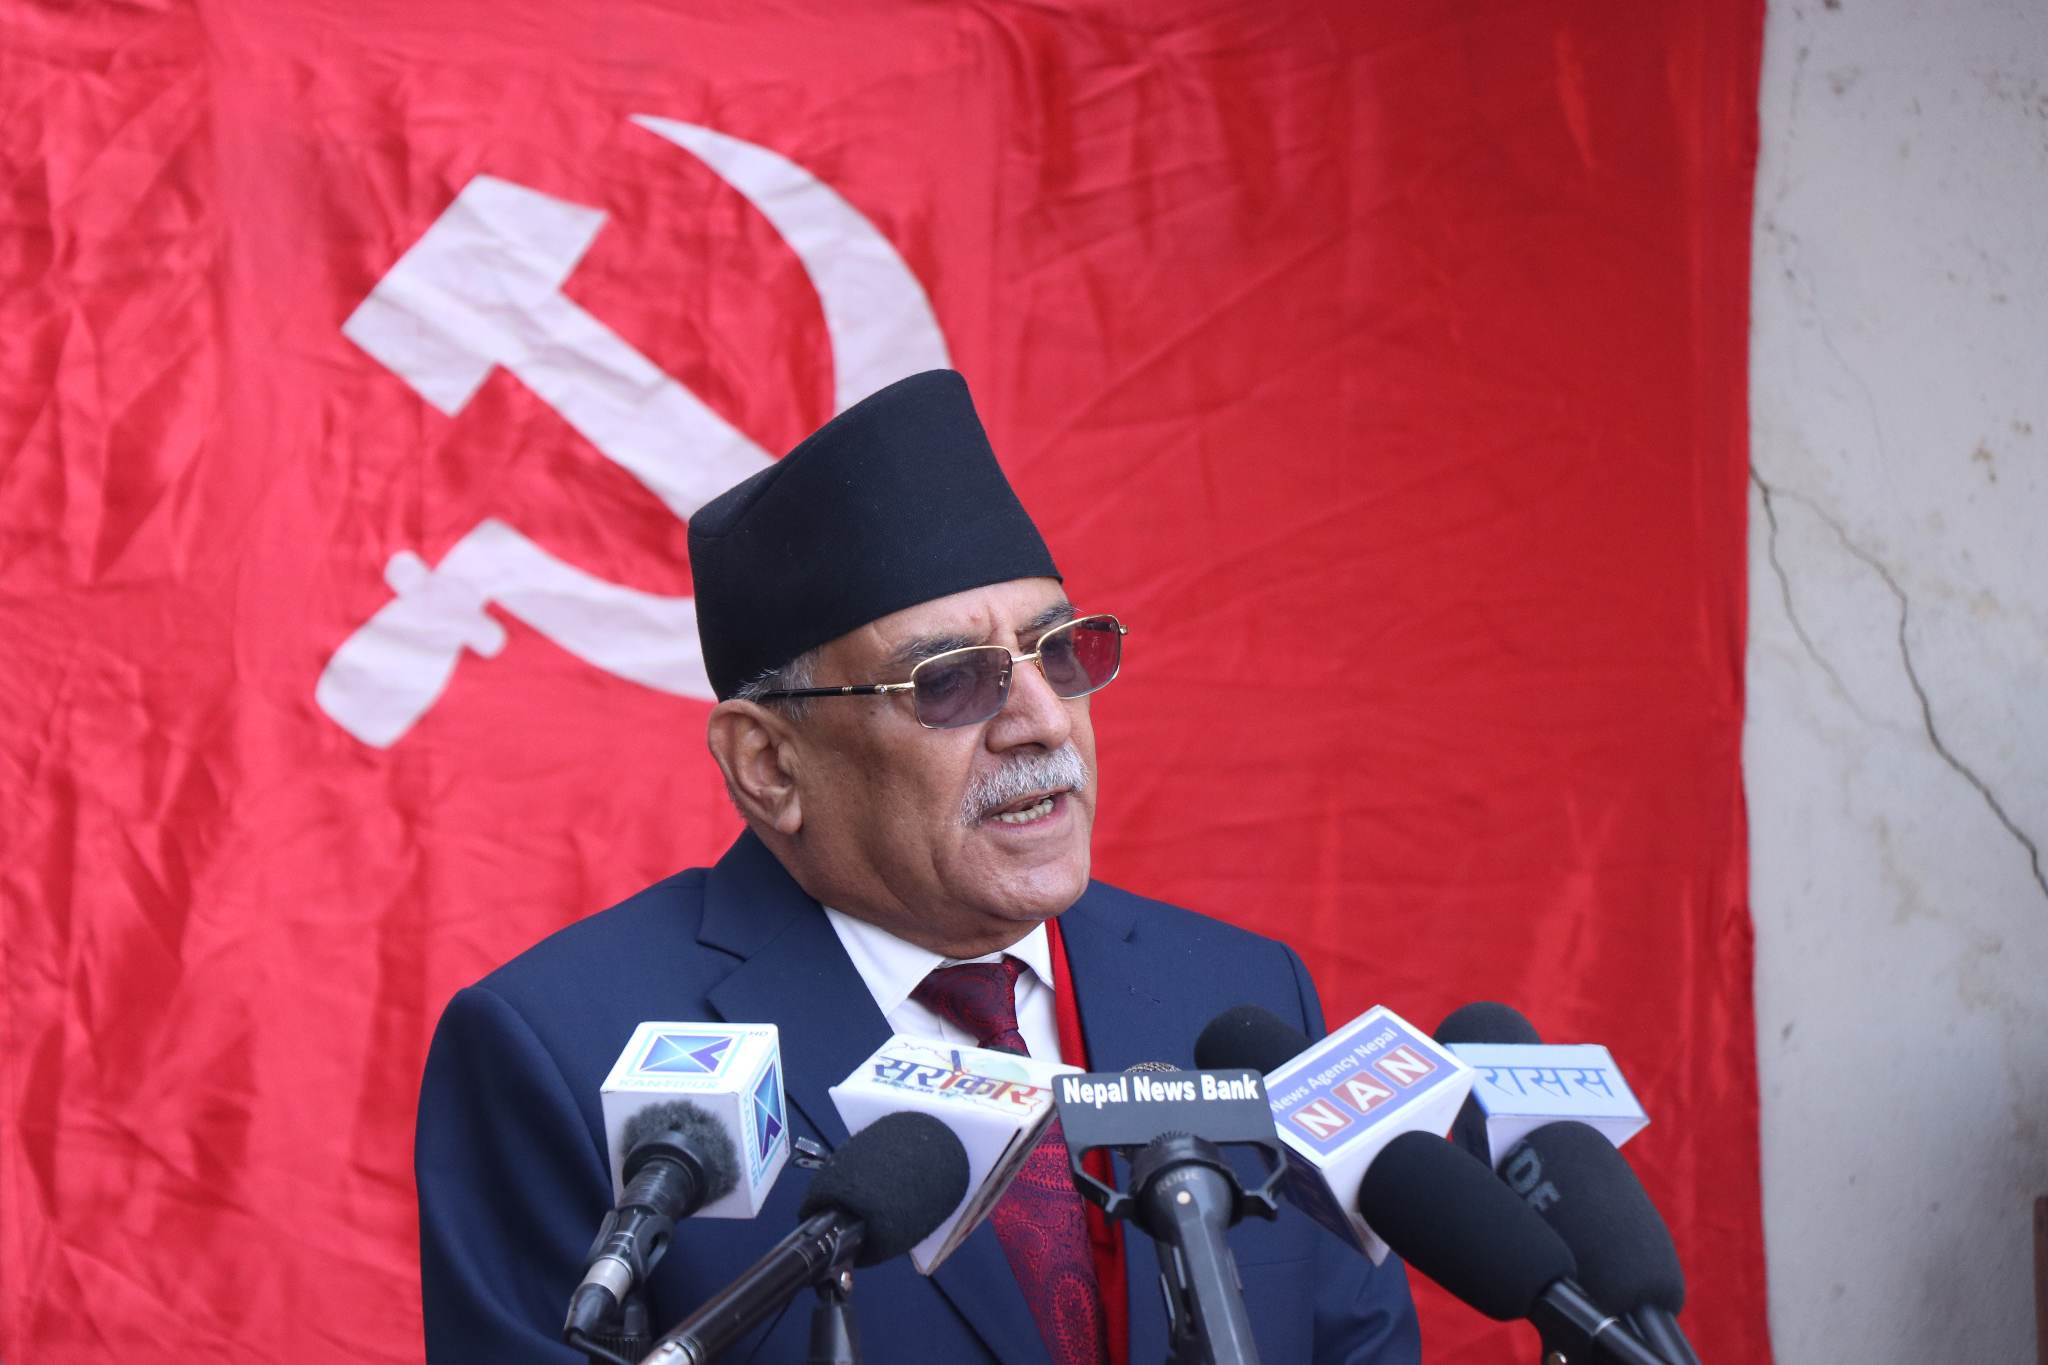 जनयुद्ध दिवस अब नेपाल राष्ट्रकै सम्पत्ति : प्रधानमन्त्री